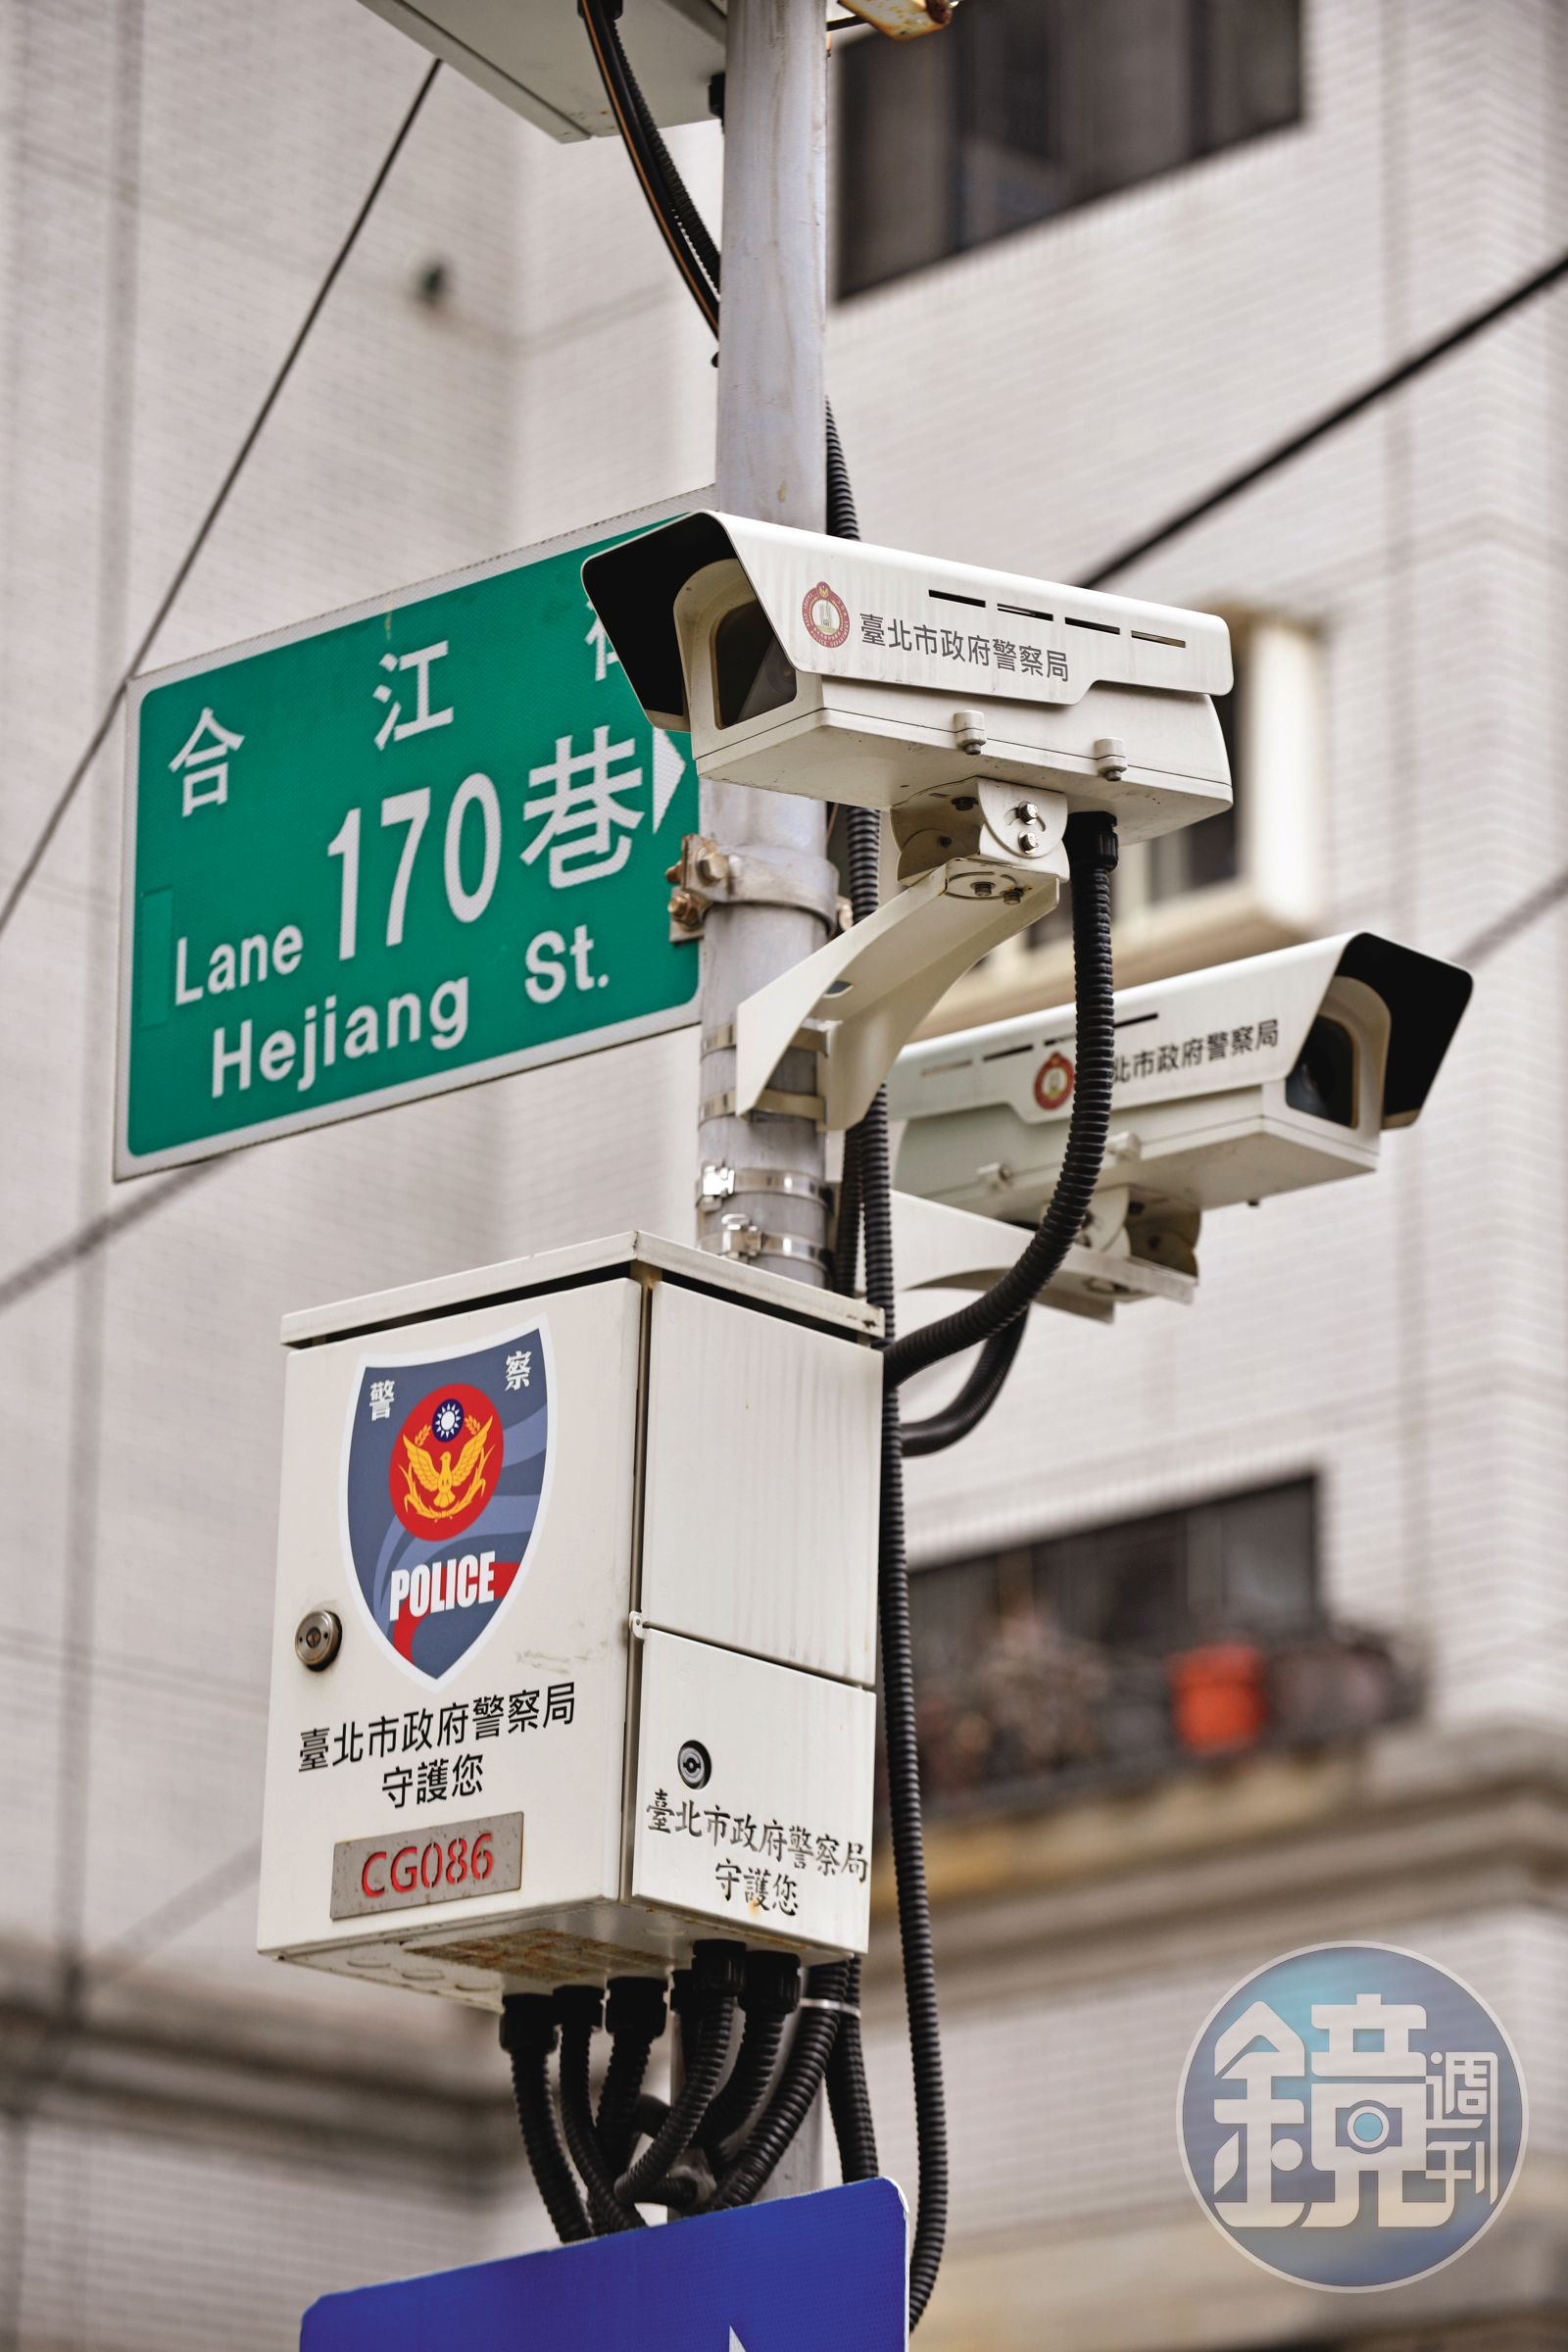 北市警局與台智光簽署的網路監視系統合約，廠商報價遭質疑比一般市價還高，且傳出弊案，引起各界矚目